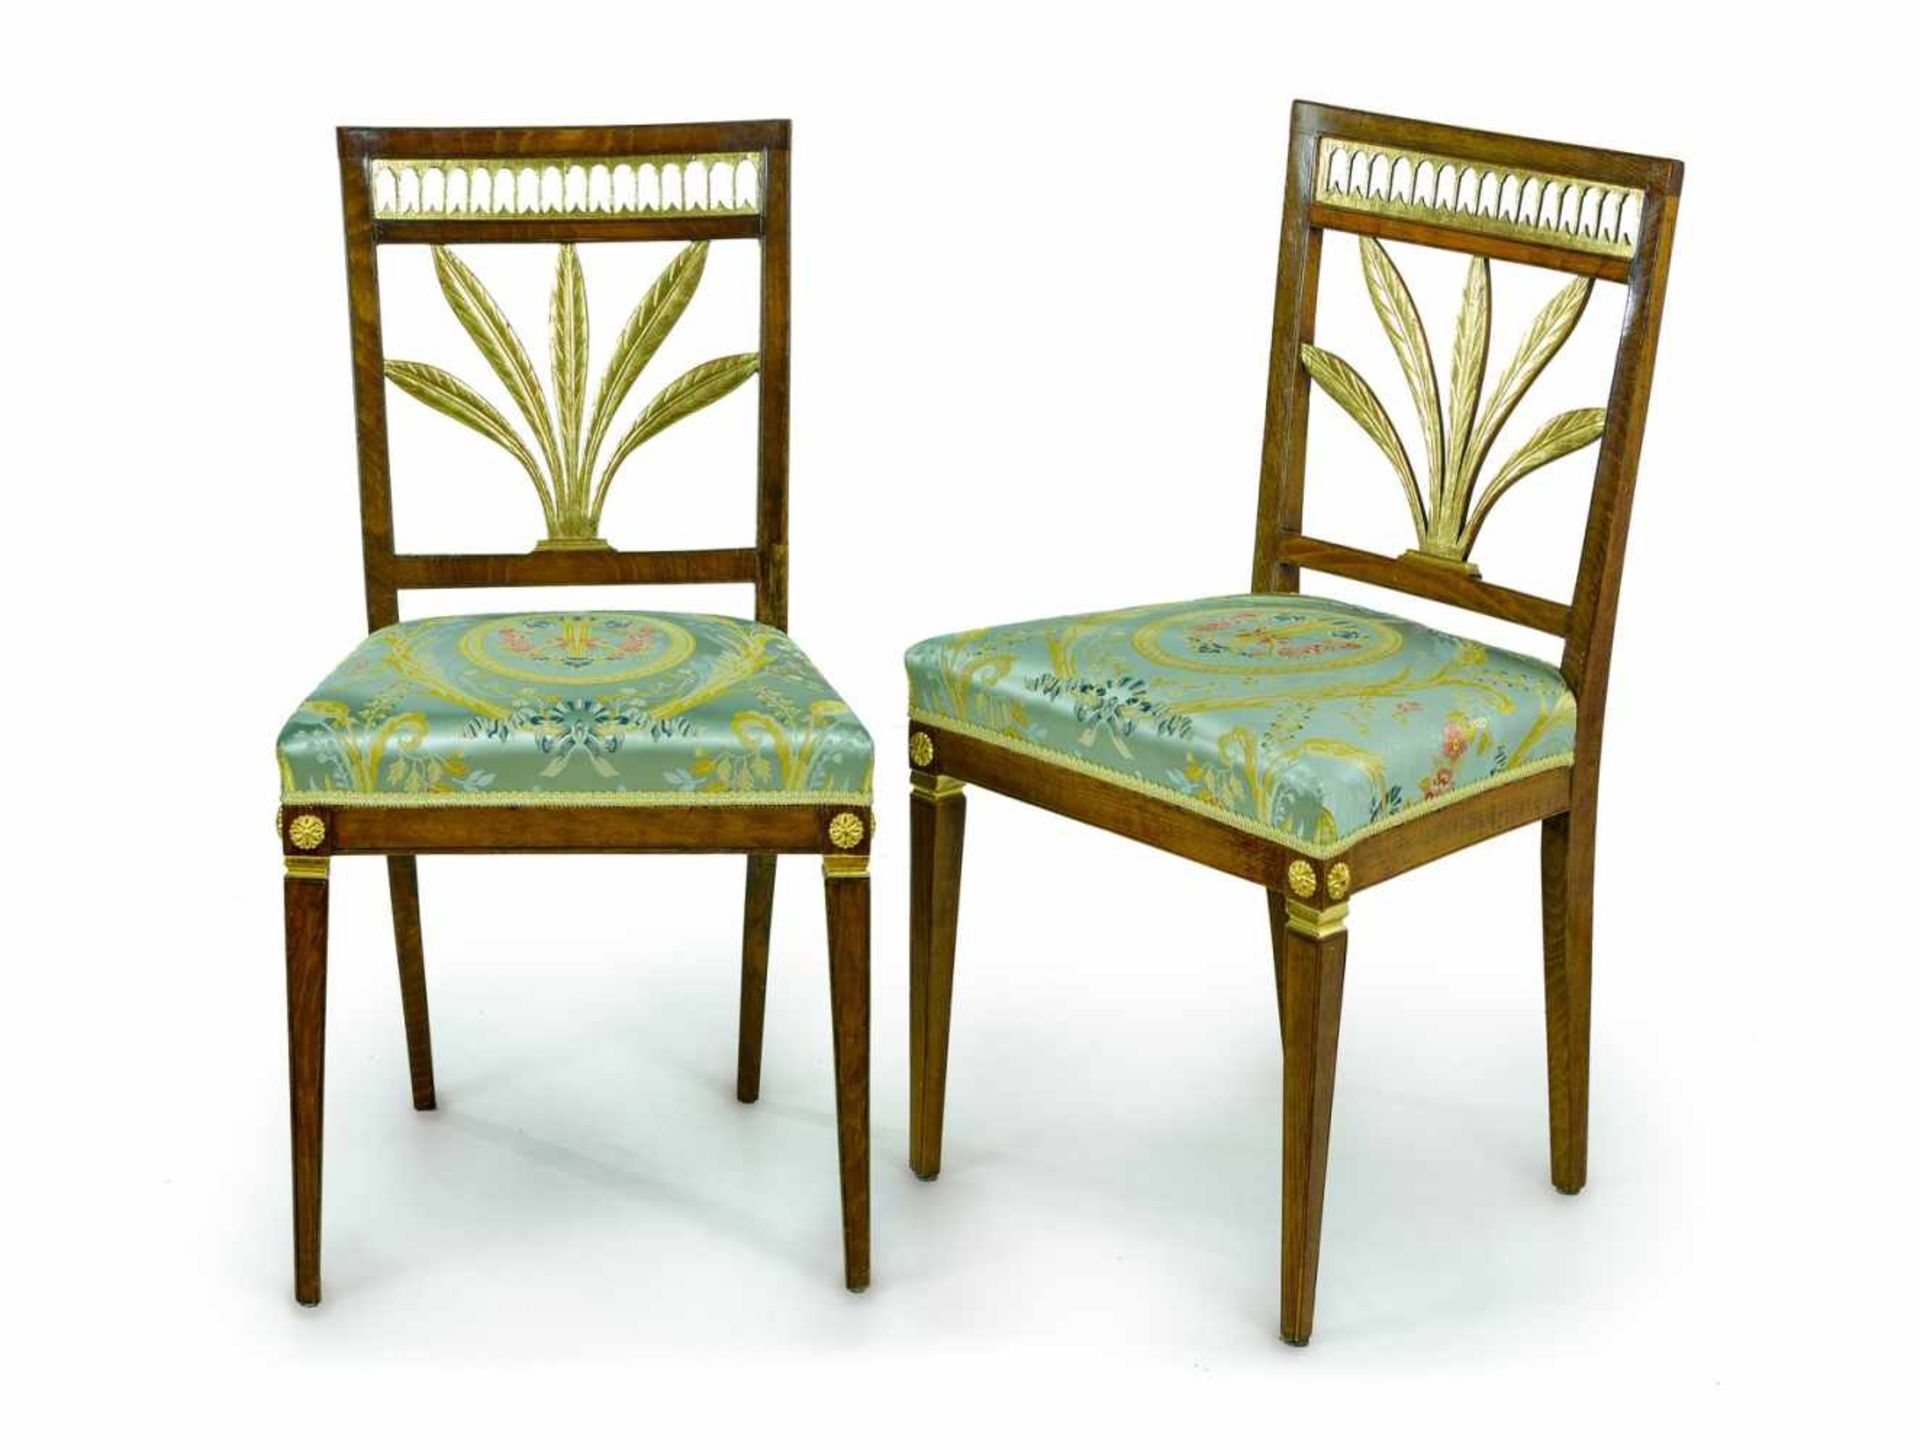 Ein Paar klassizistische StühleBerlin, um 1795Buche, teilvergoldet. Quadratische Rückenlehne mit